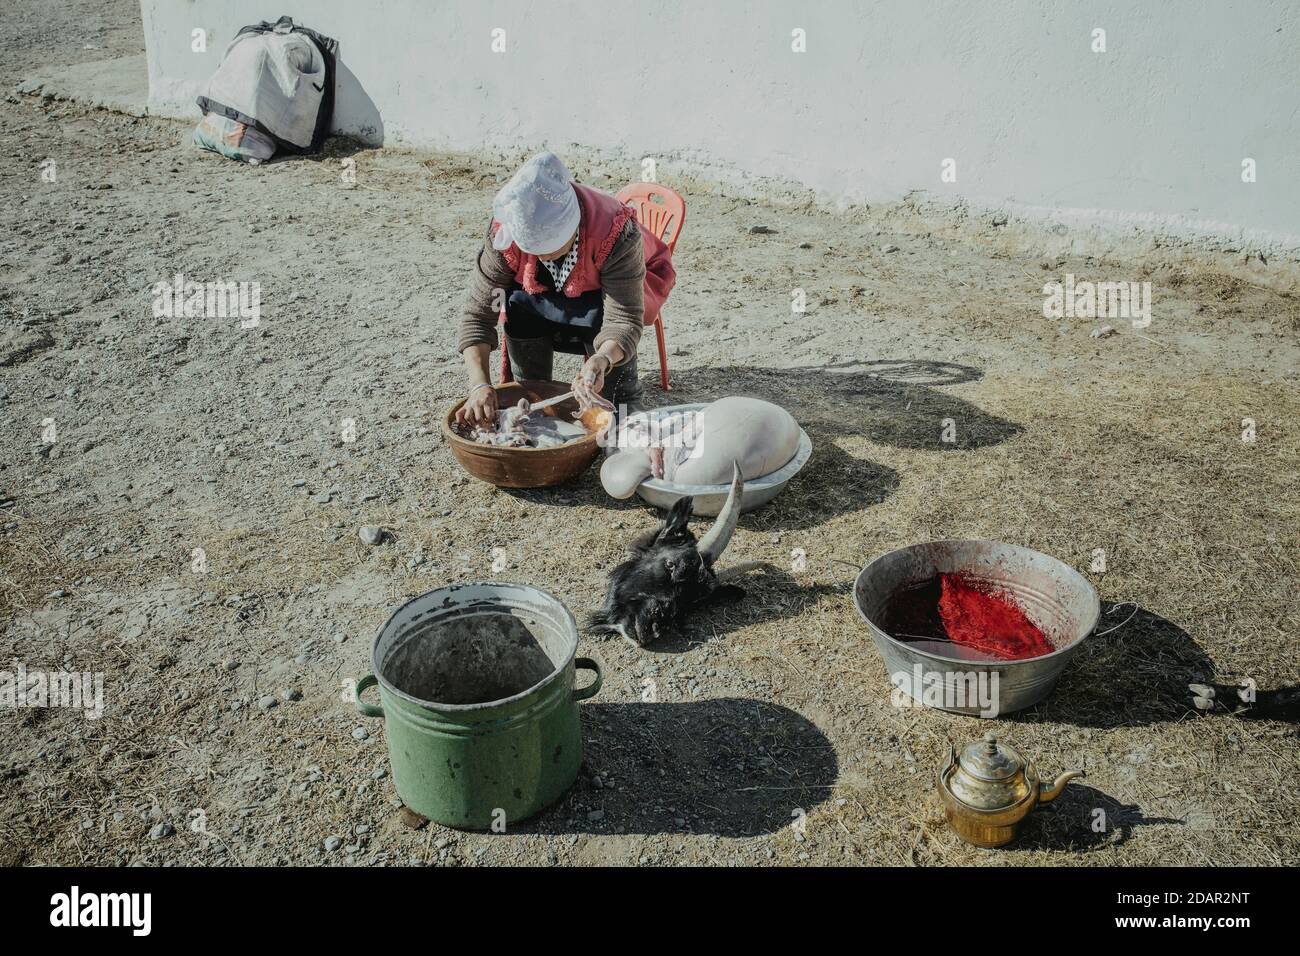 Jamalgan, femme du chasseur d'aigles Bashakhan SPAI, nettoie les intestins et l'estomac d'une chèvre abattue, Kisil Char, Olgii, Mongolie Banque D'Images